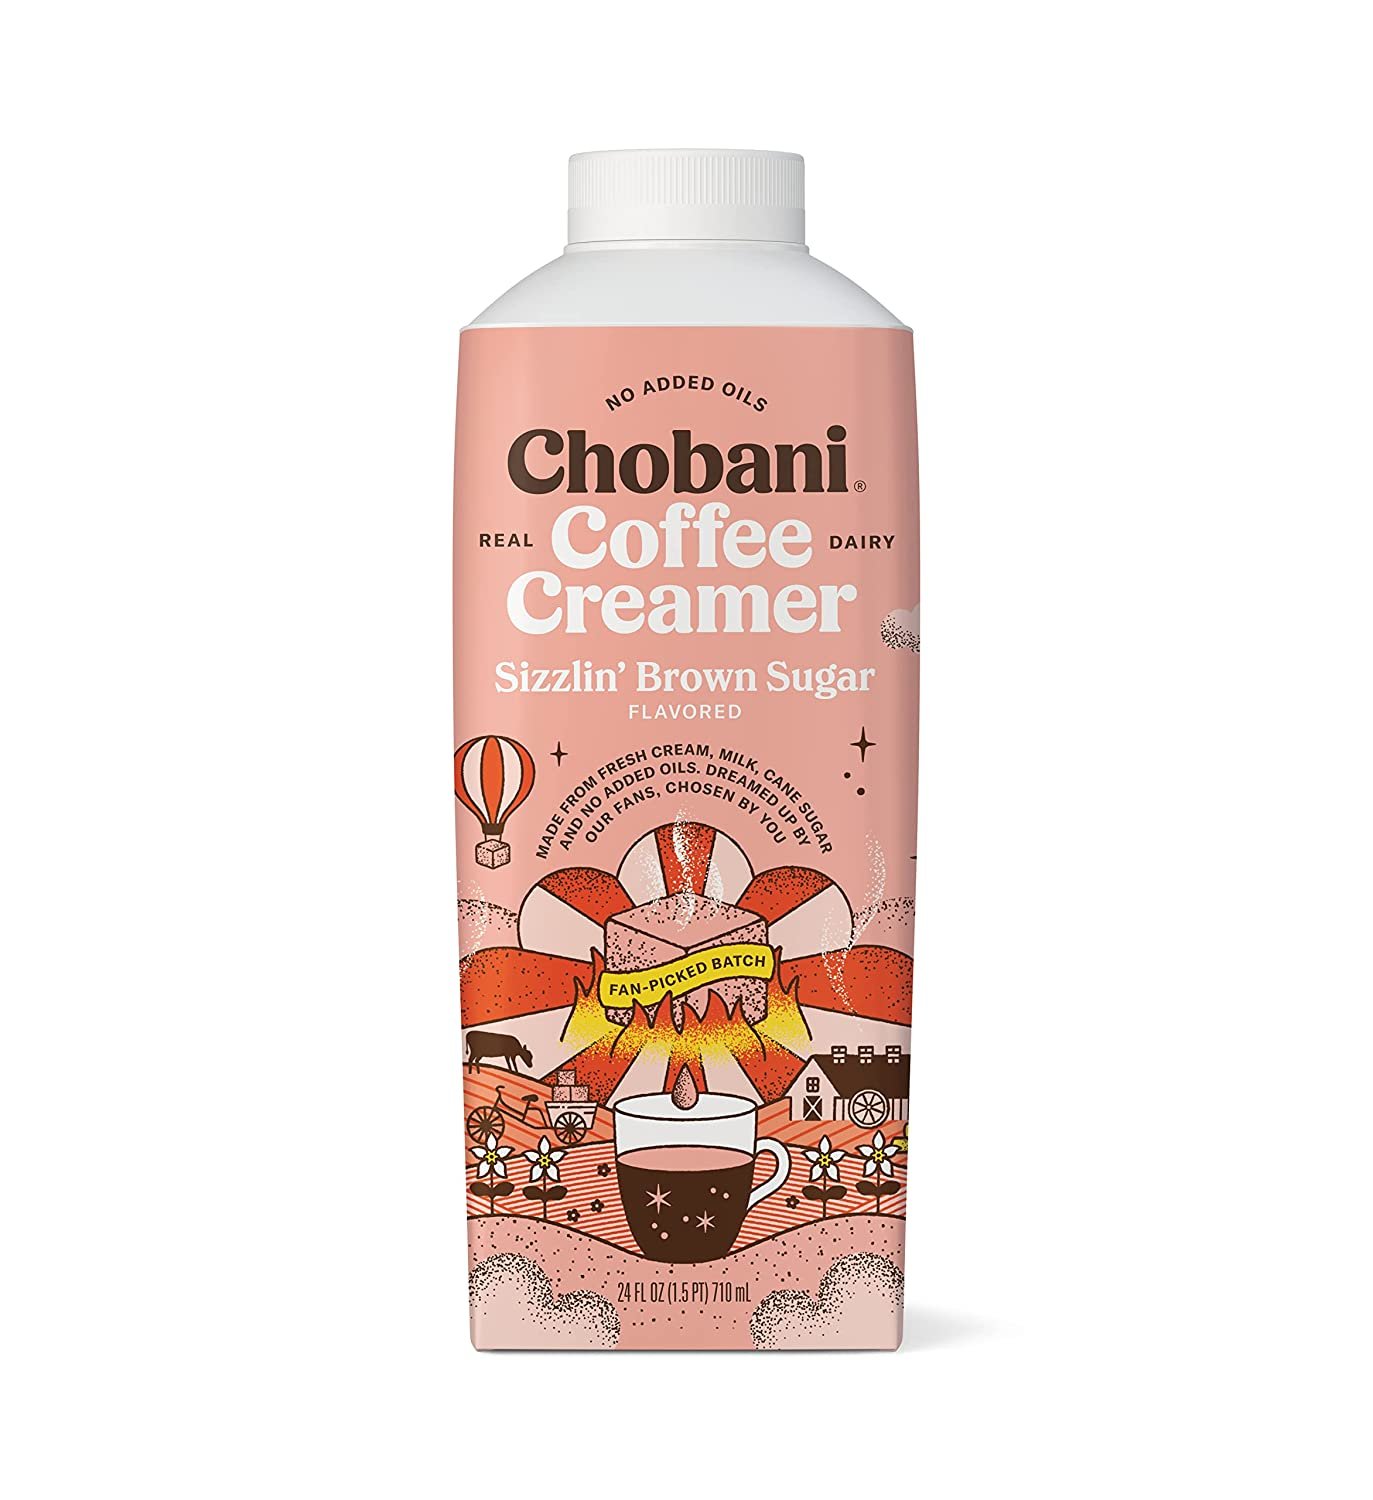 Chobani Brown Sugar Creamer.jpeg